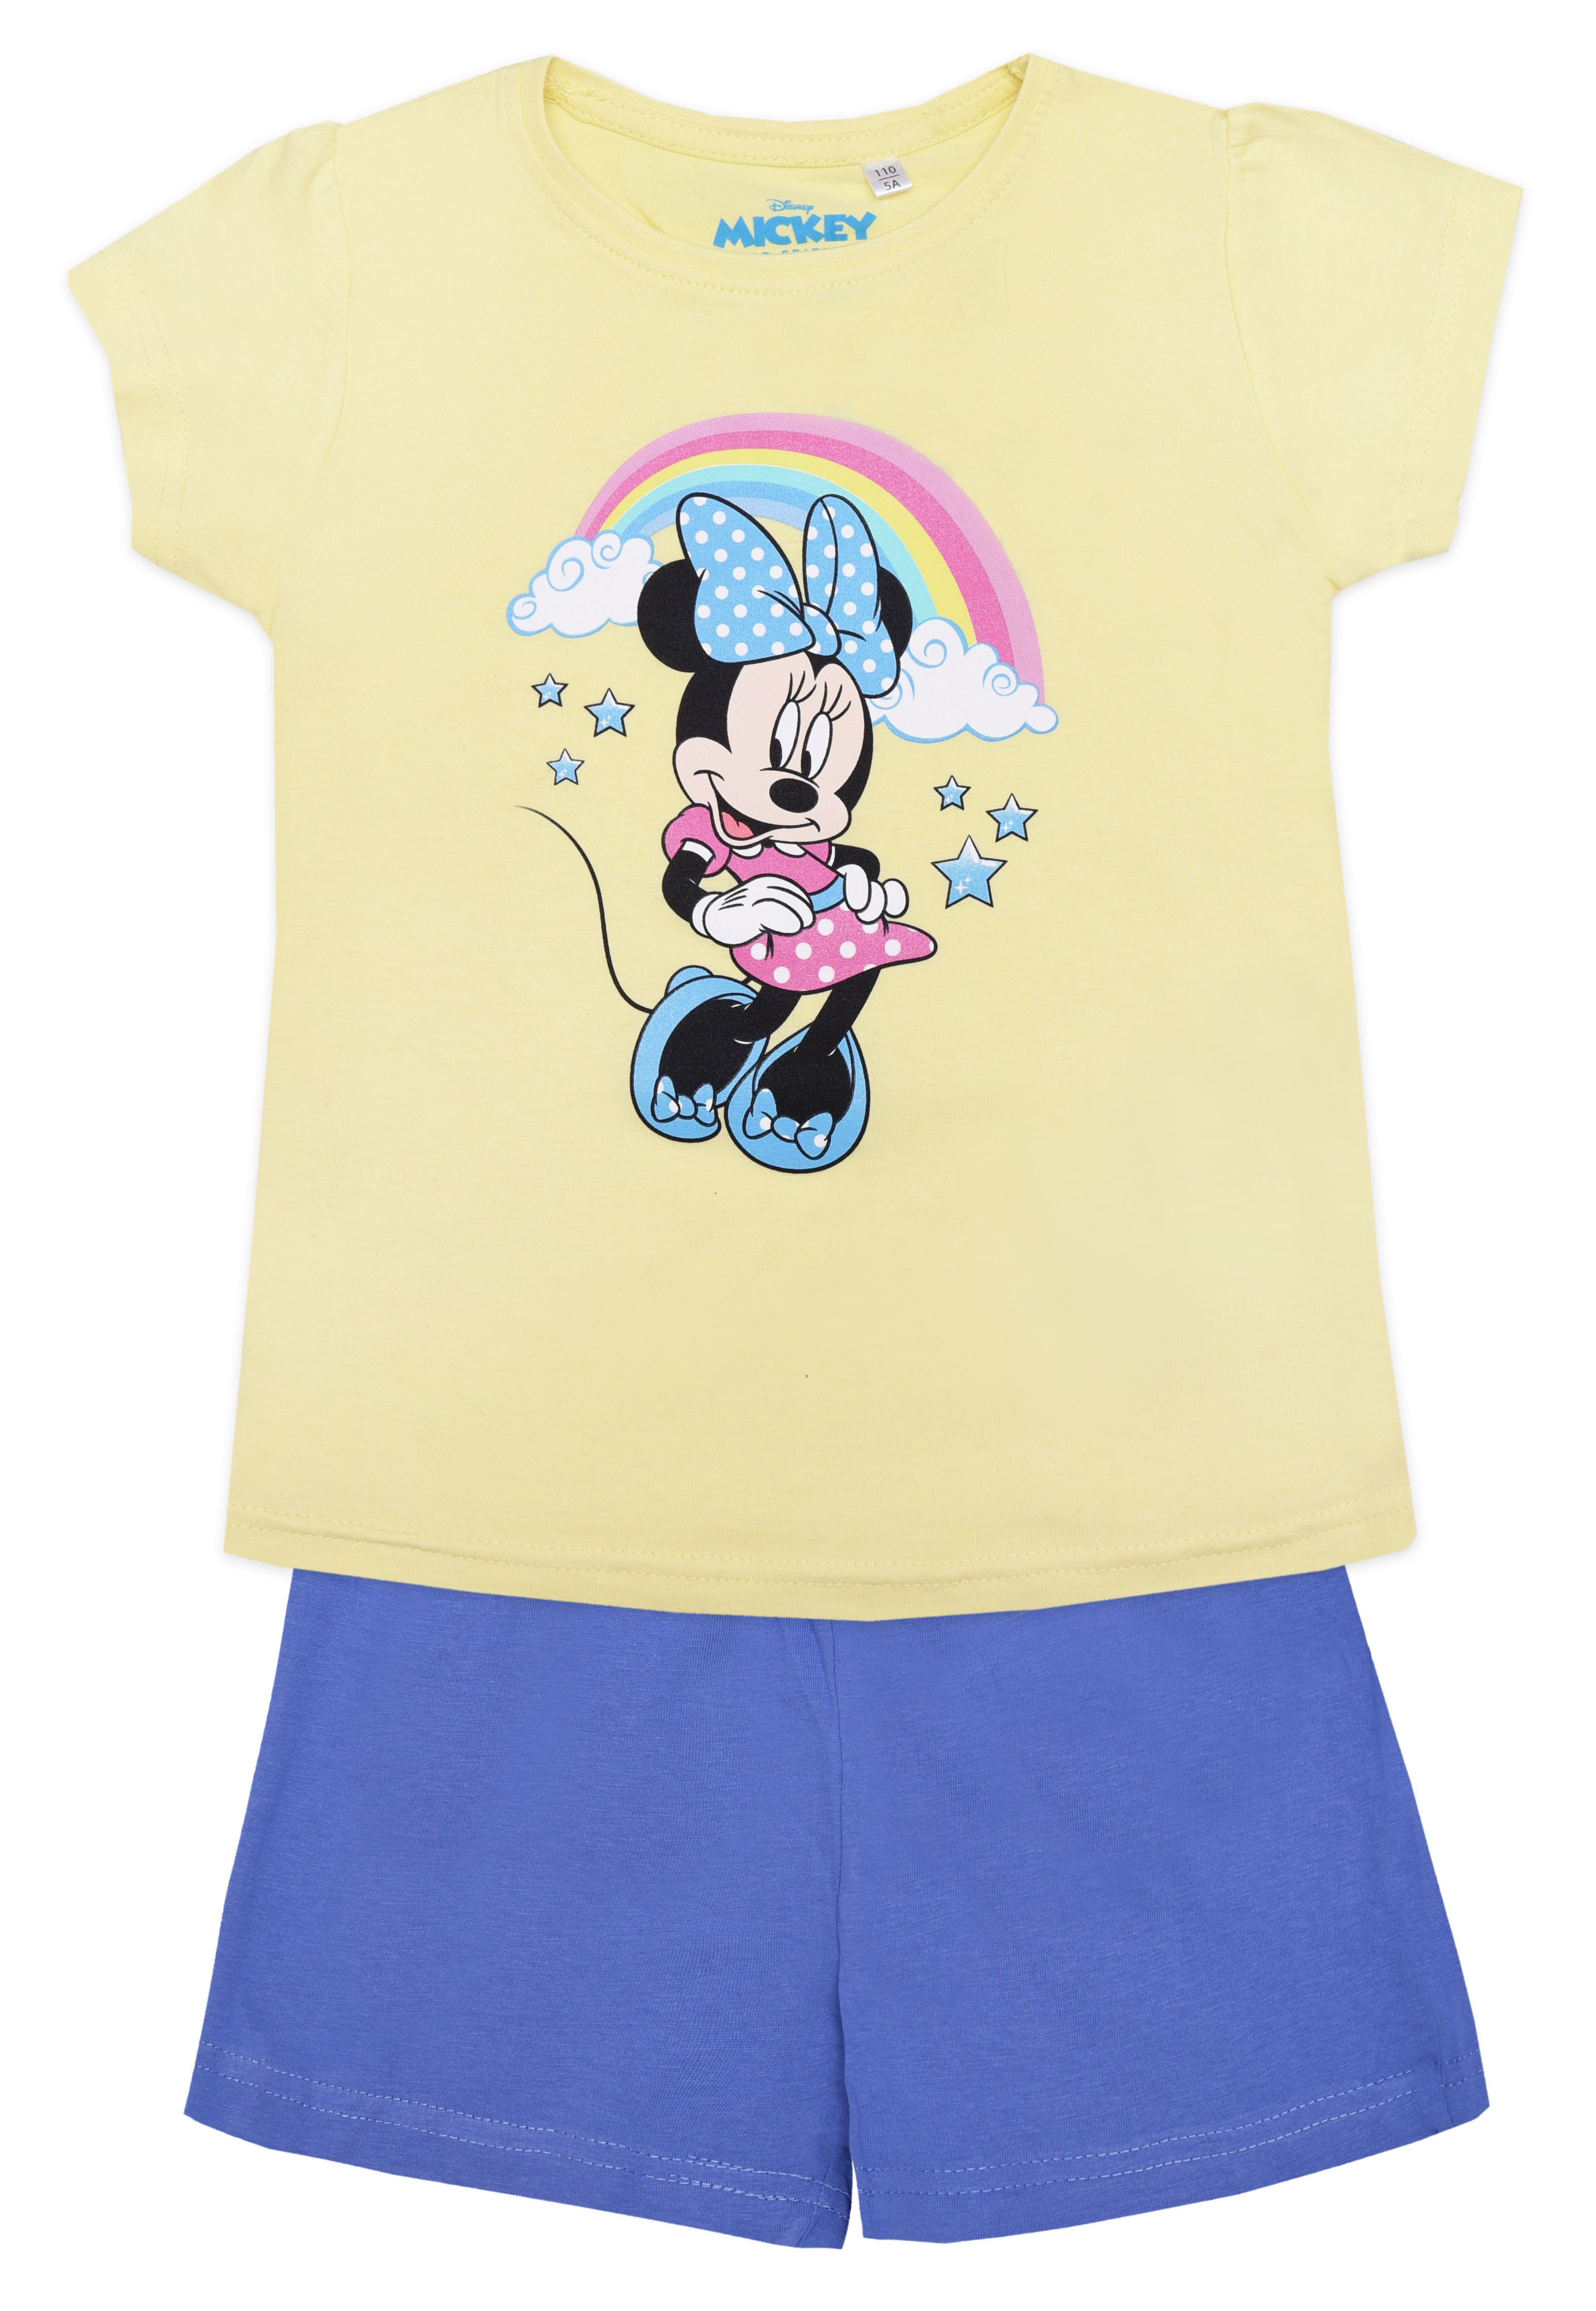 Kinder Kinderunterwäsche Disney Minnie Mouse Schlafanzug Mädchen kurzarm Pyjama Gr. 98 bis 128, Baumwolle